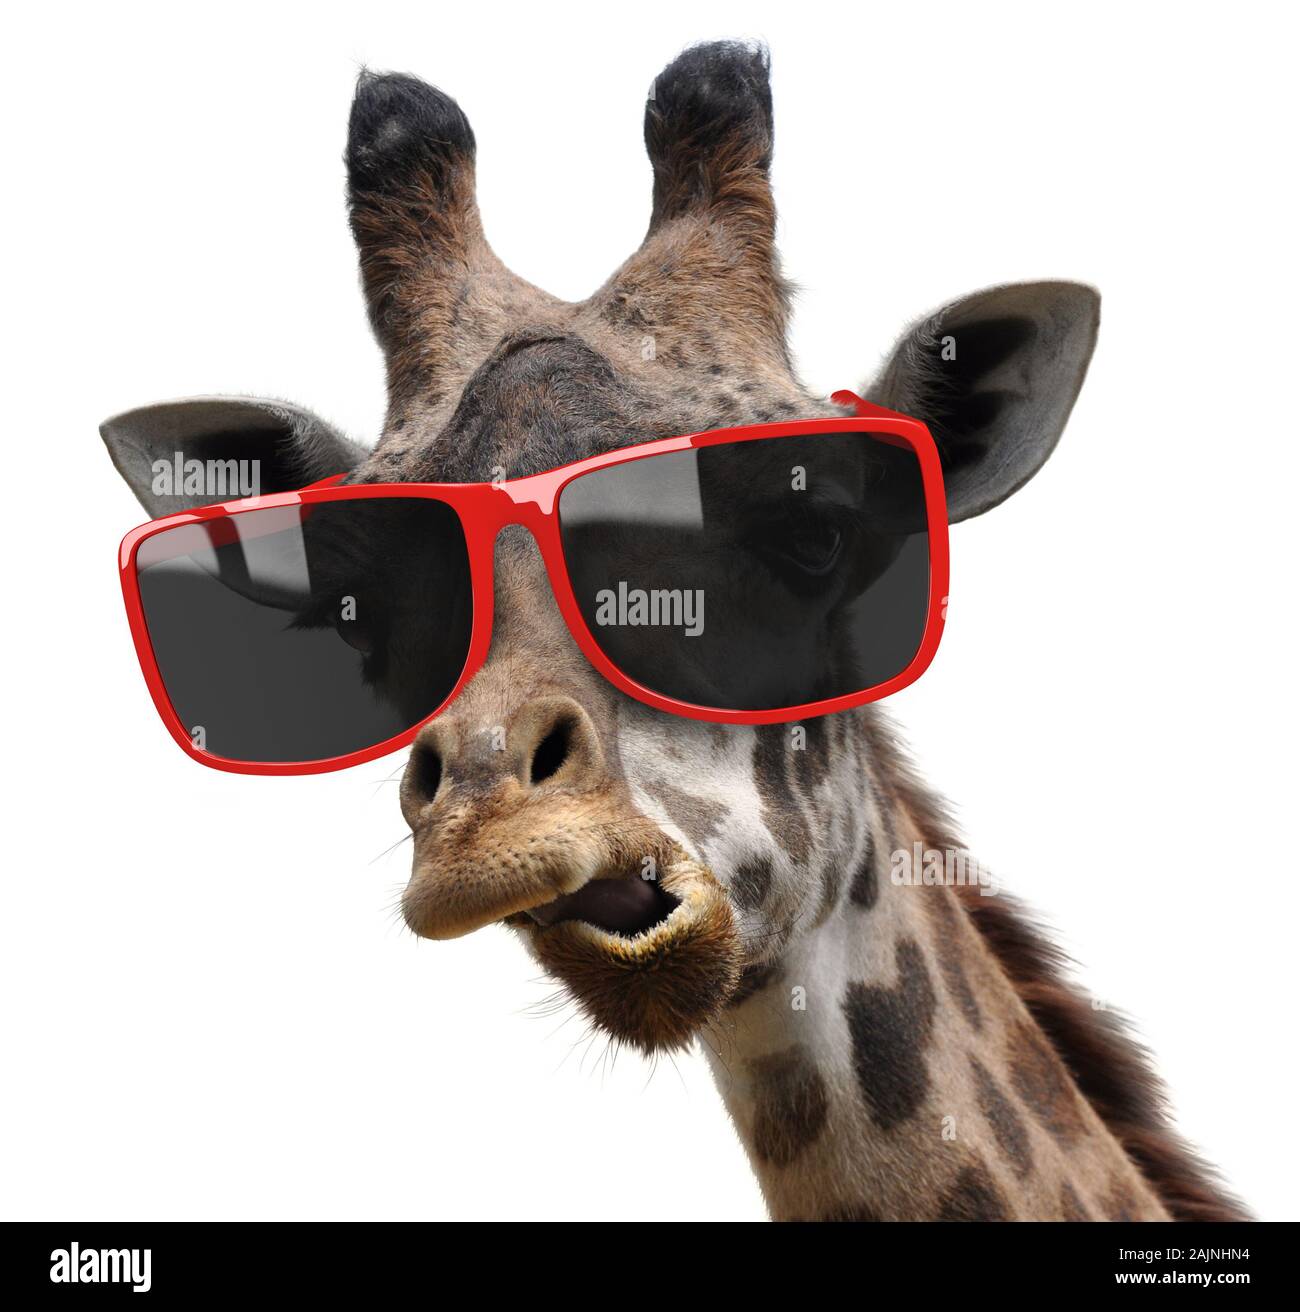 Funny vogue fashion ritratto di una giraffa con tanga moderni occhiali da sole Foto Stock